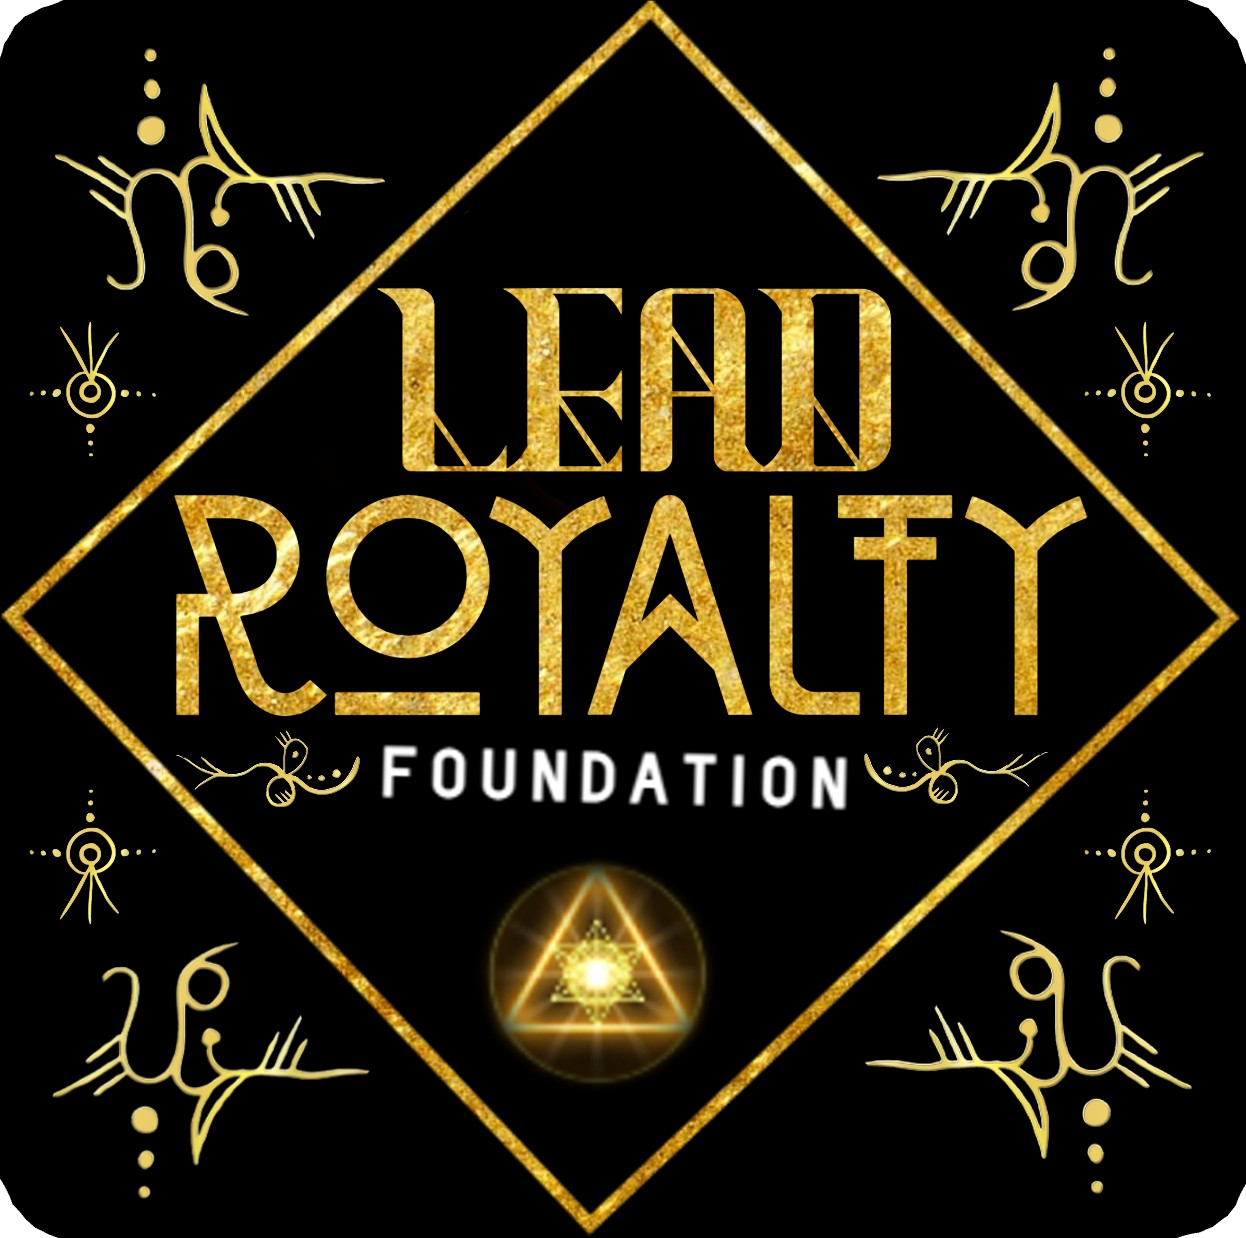 Lead Royalty Foundation